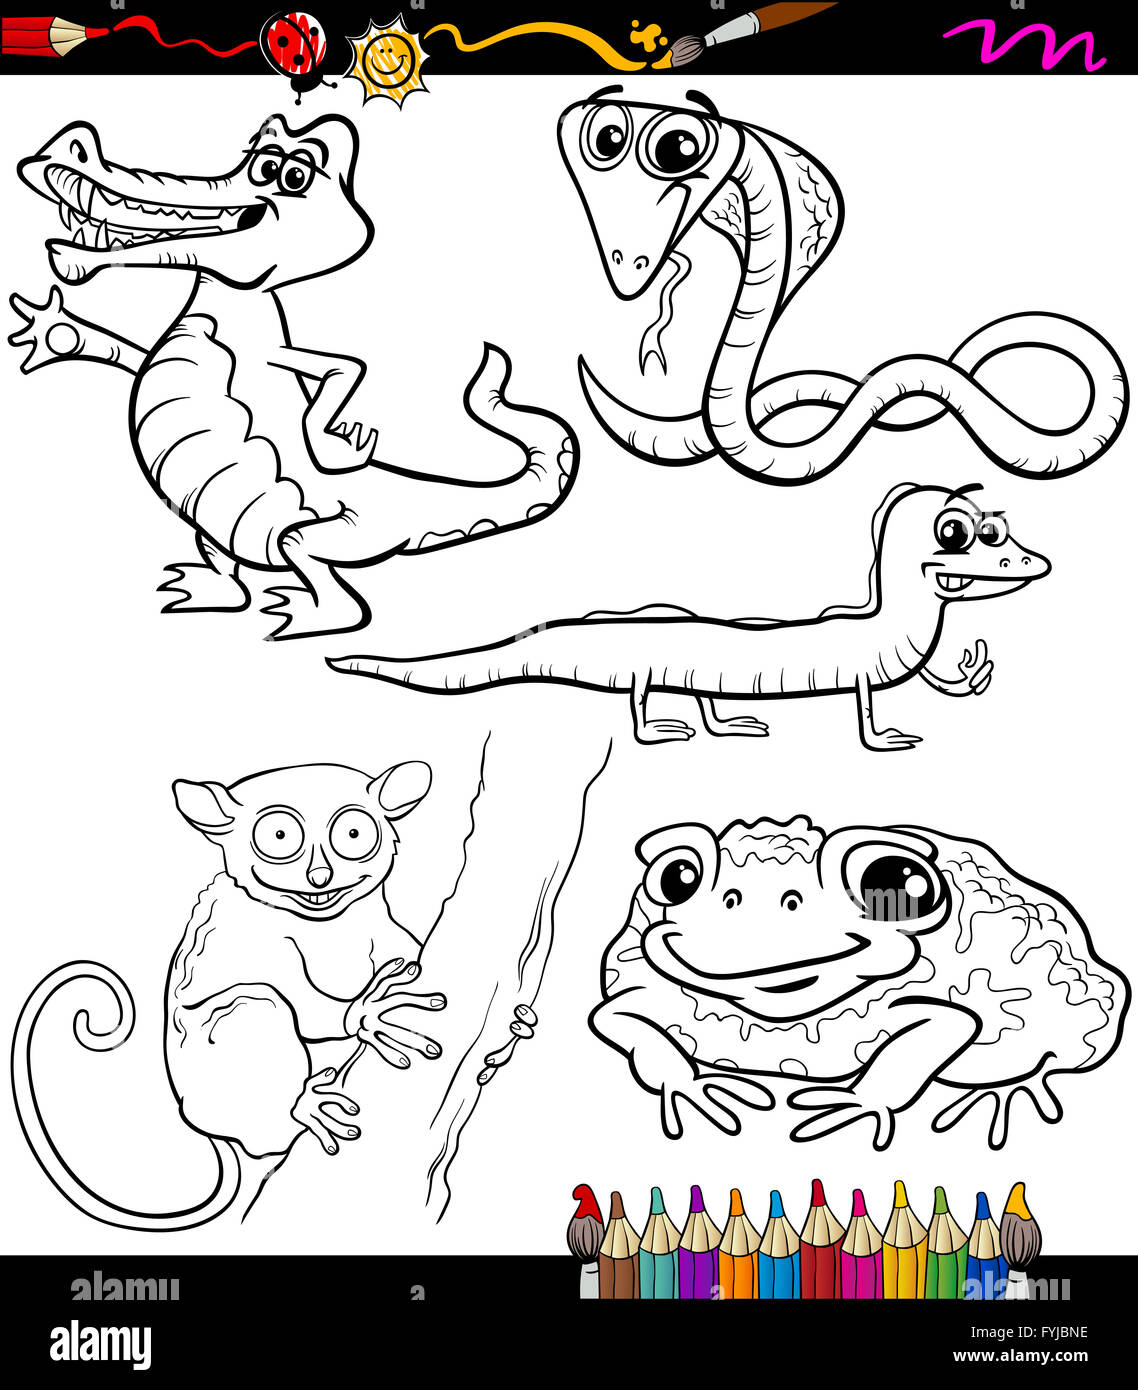 animals set cartoon coloring book Stock Photo